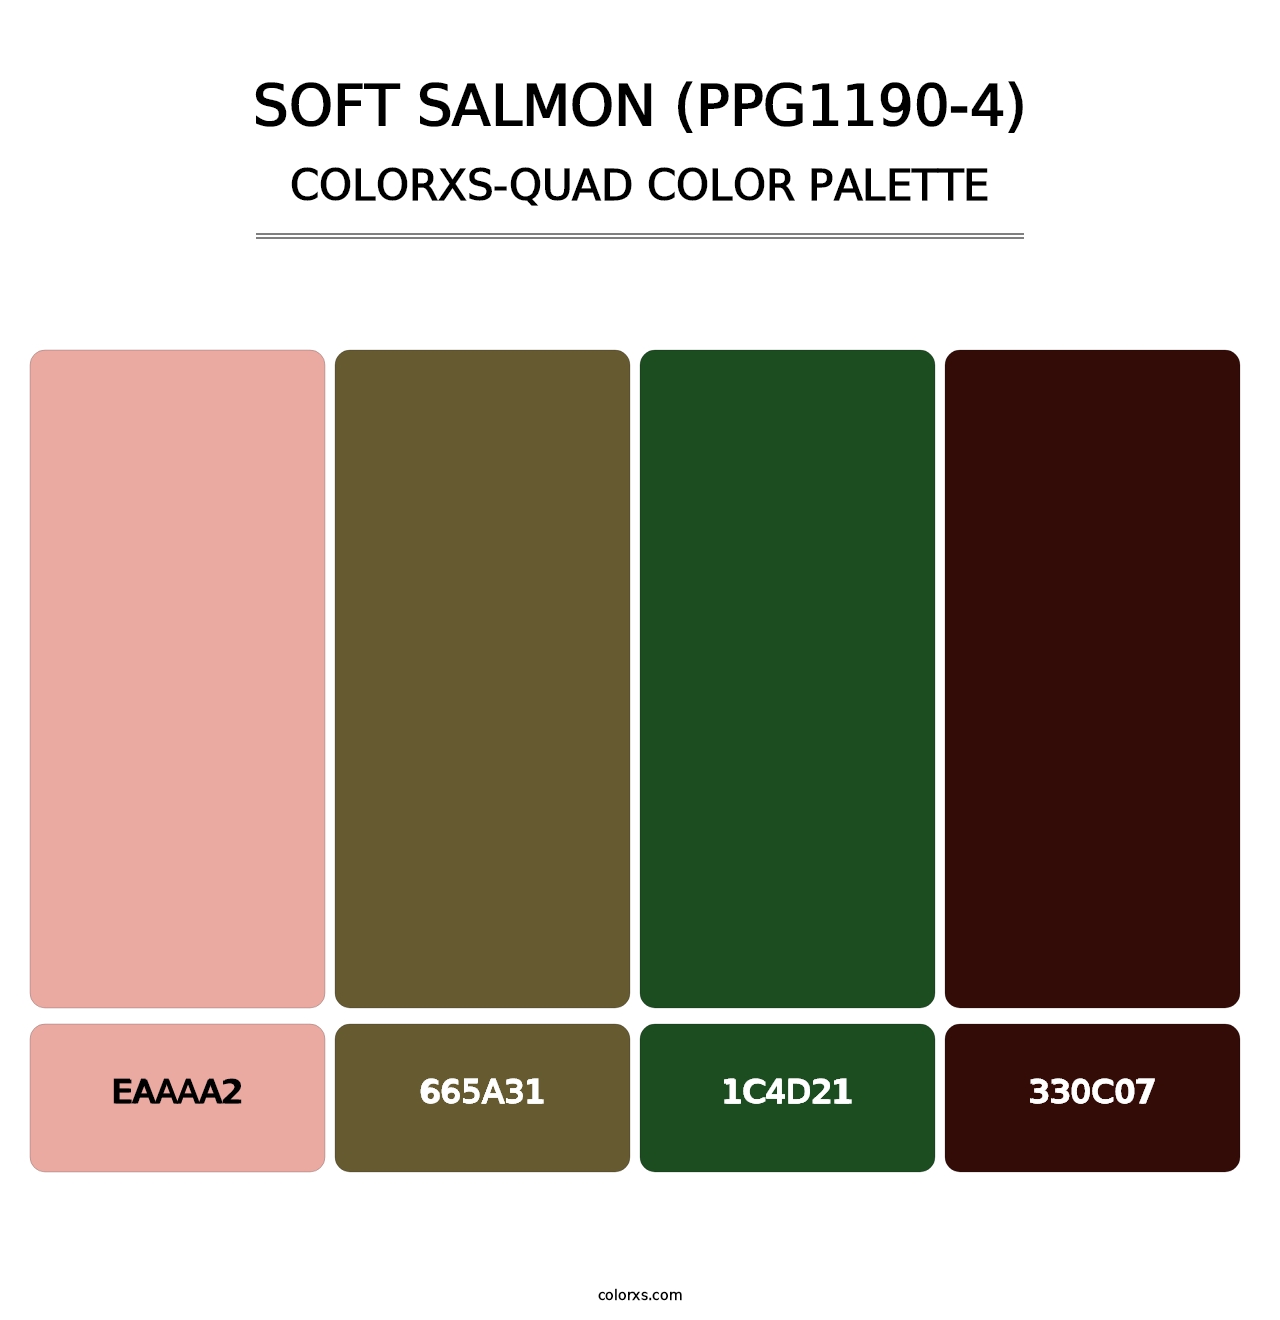 Soft Salmon (PPG1190-4) - Colorxs Quad Palette